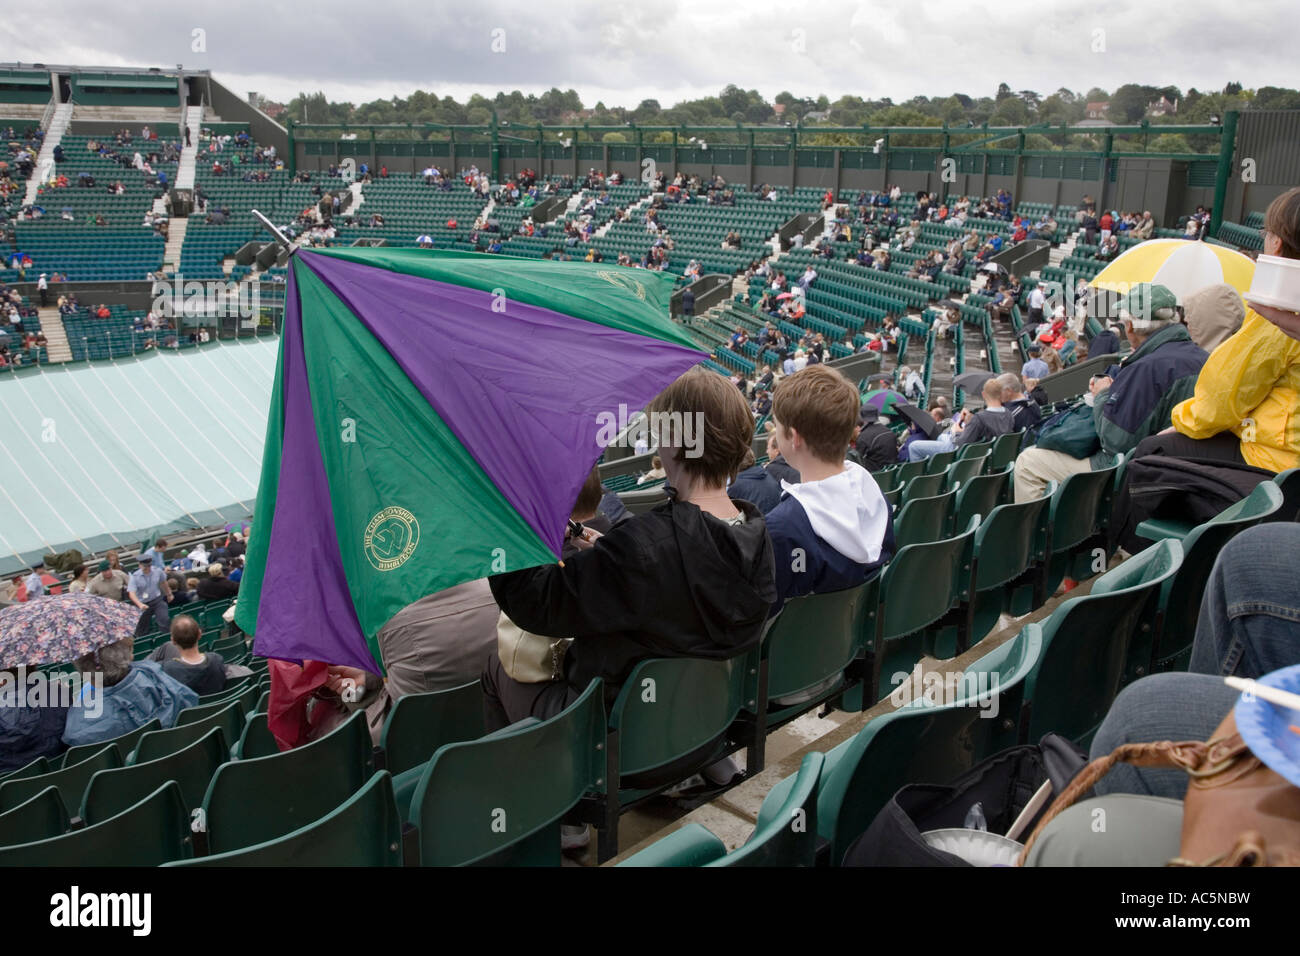 La interrupción de la lluvia en el centro de la Cancha de tenis de Wimbledon Campeonato UK Foto de stock